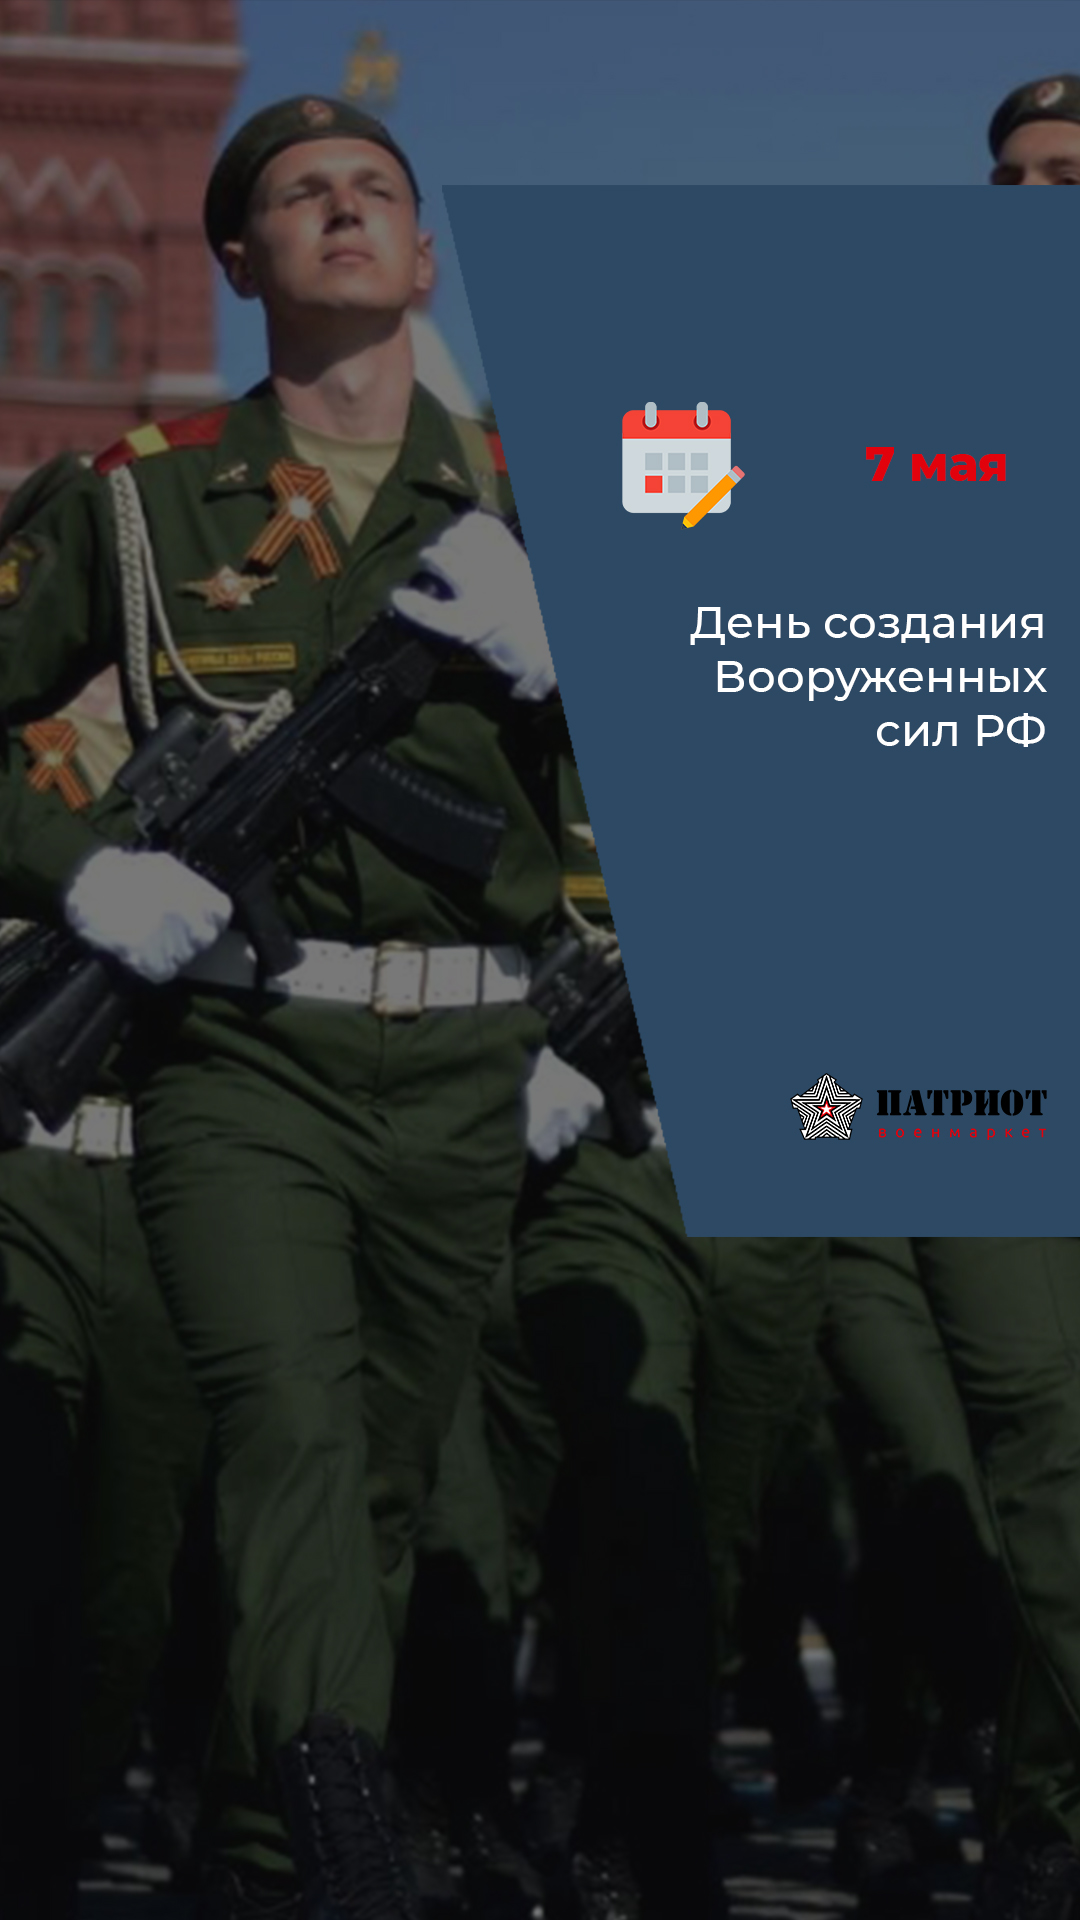 7 мая - День создания Вооруженных сил РФ 